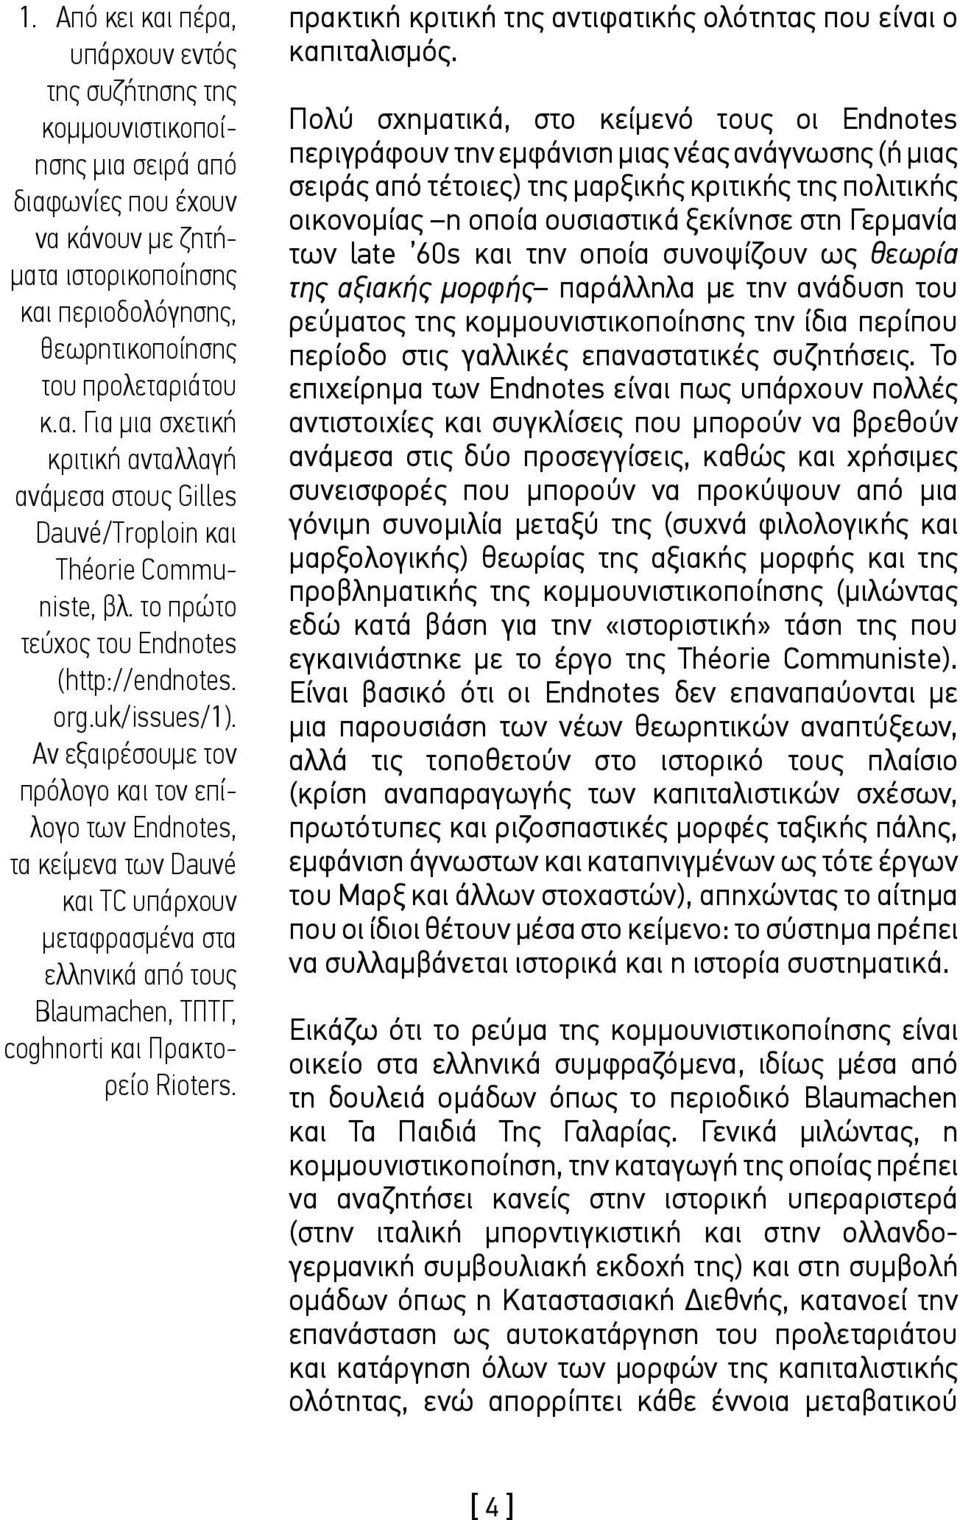 Αν εξαιρέσουμε τον πρόλογο και τον επίλογο των Endnotes, τα κείμενα των Dauvé και TC υπάρχουν μεταφρασμένα στα ελληνικά από τους Blaumachen, ΤΠΤΓ, coghnorti και Πρακτορείο Rioters.